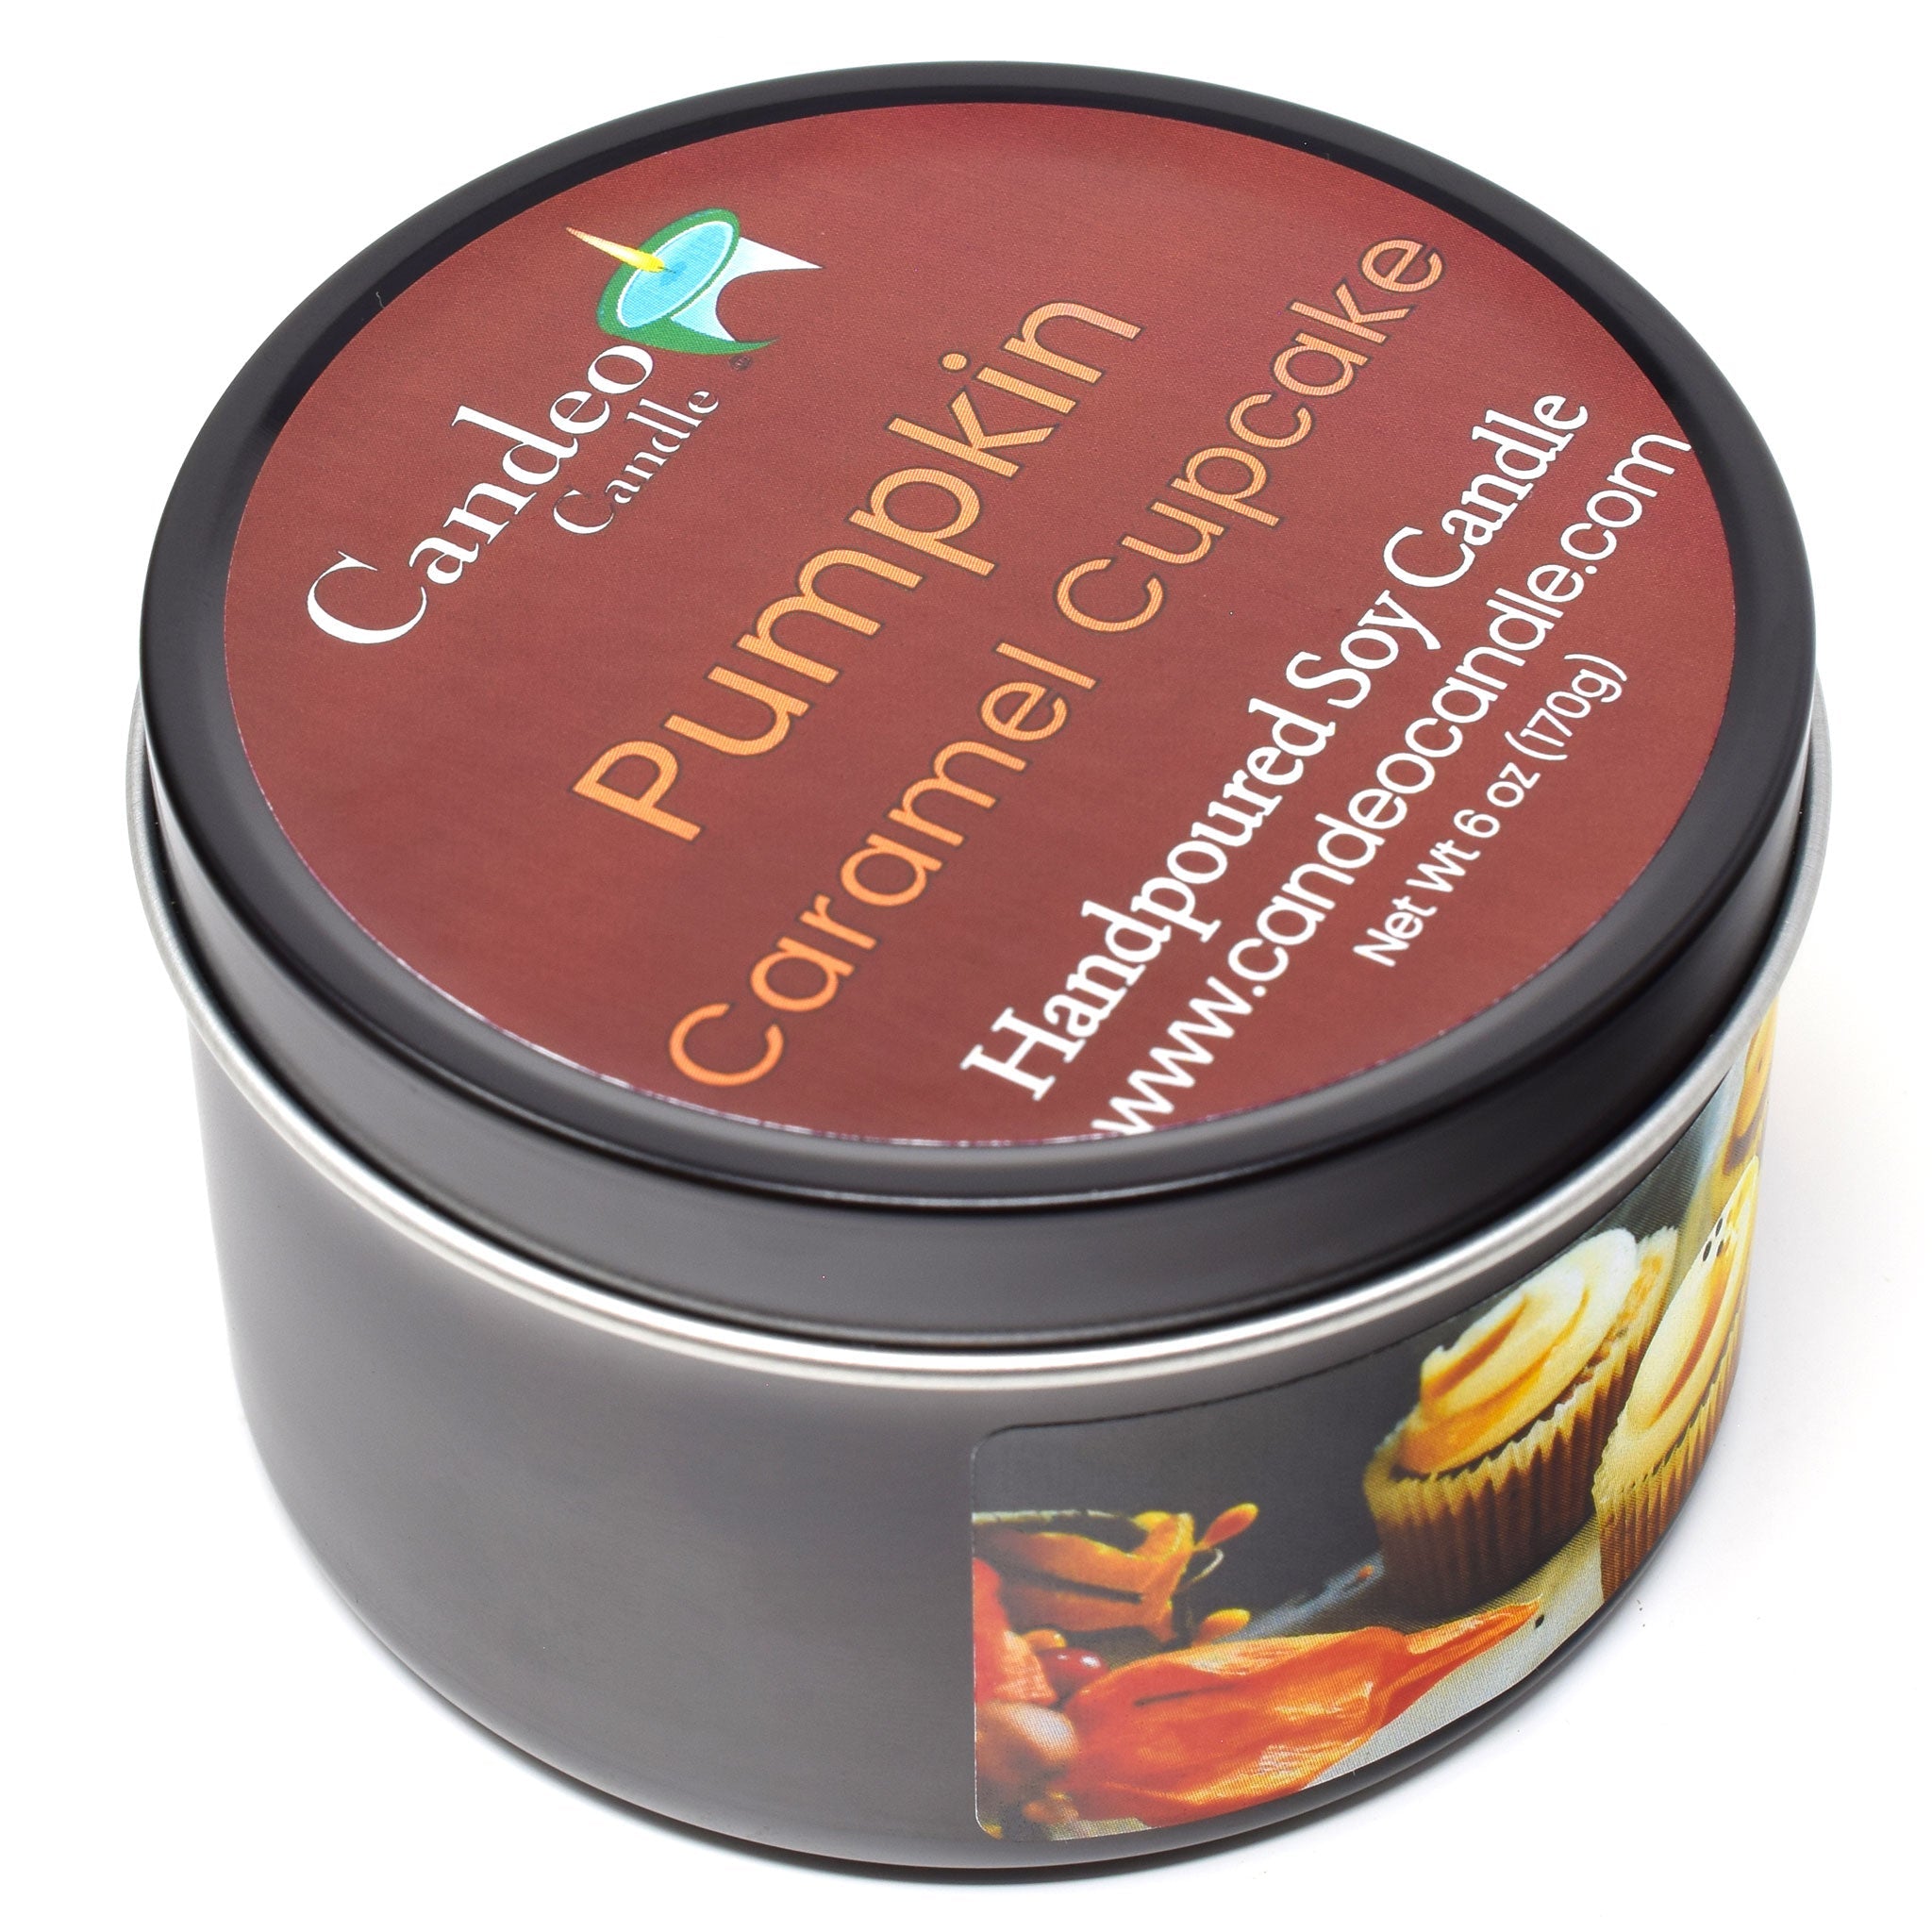 Pumpkin Caramel Cupcake, 6oz Soy Candle Tin - Candeo Candle